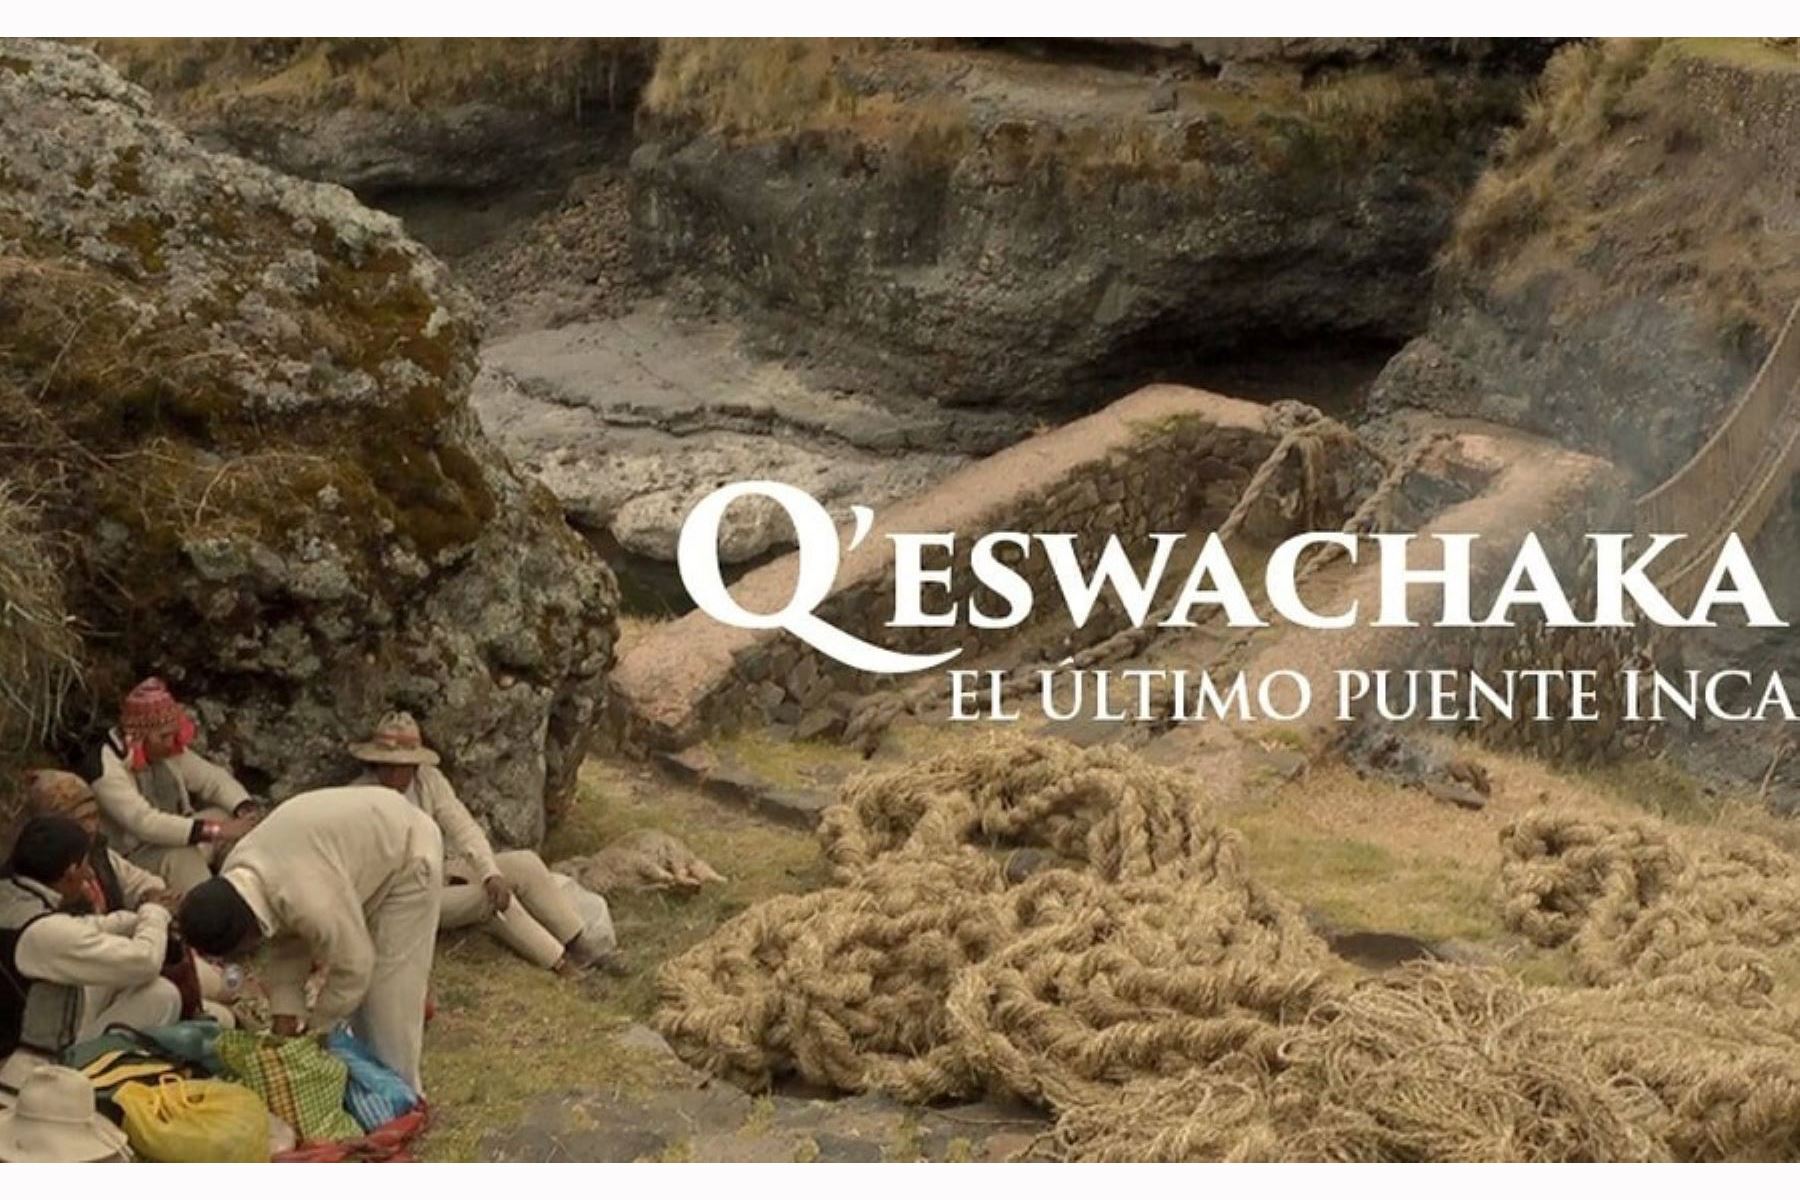 Con un ritual de ofrendas a la Pachamama y a los apus tutelares se inició hoy en el distrito de Quehue, provincia cusqueña de Canas, la festividad de construcción y renovación anual del puente Q’eswachaka, el último puente inca, que cruza el río Apurímac y que forma parte de la red de caminos inca o Qhapaq Ñan.